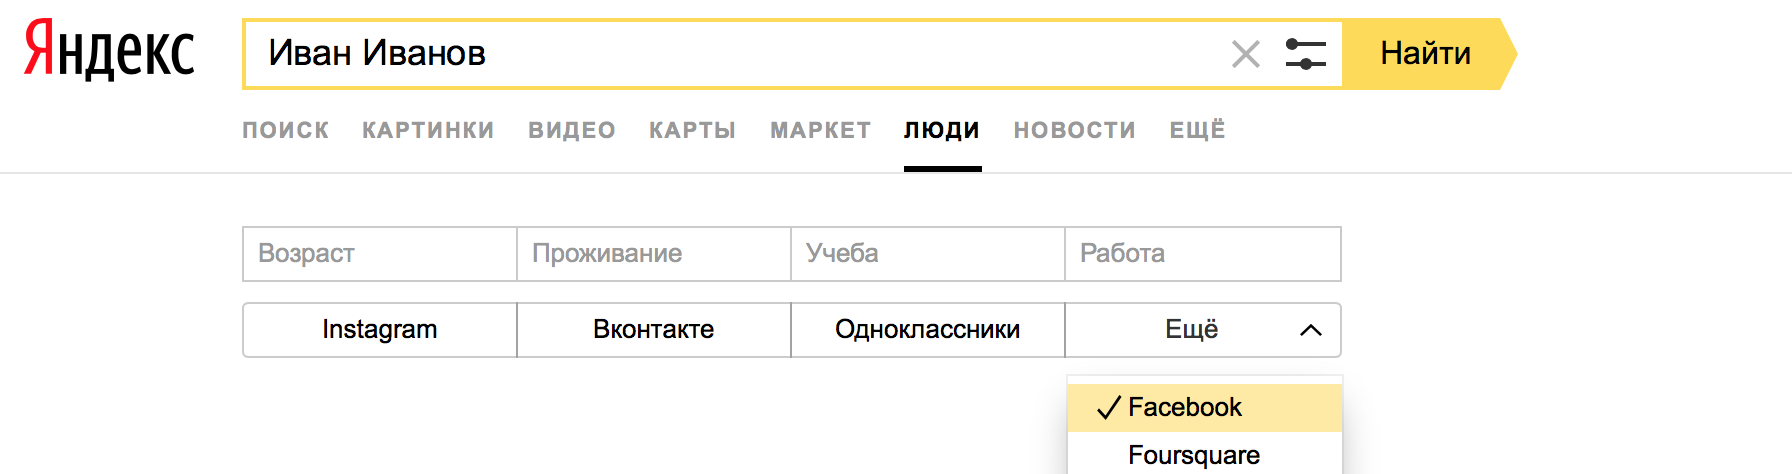 Поиск по имени в Яндекс